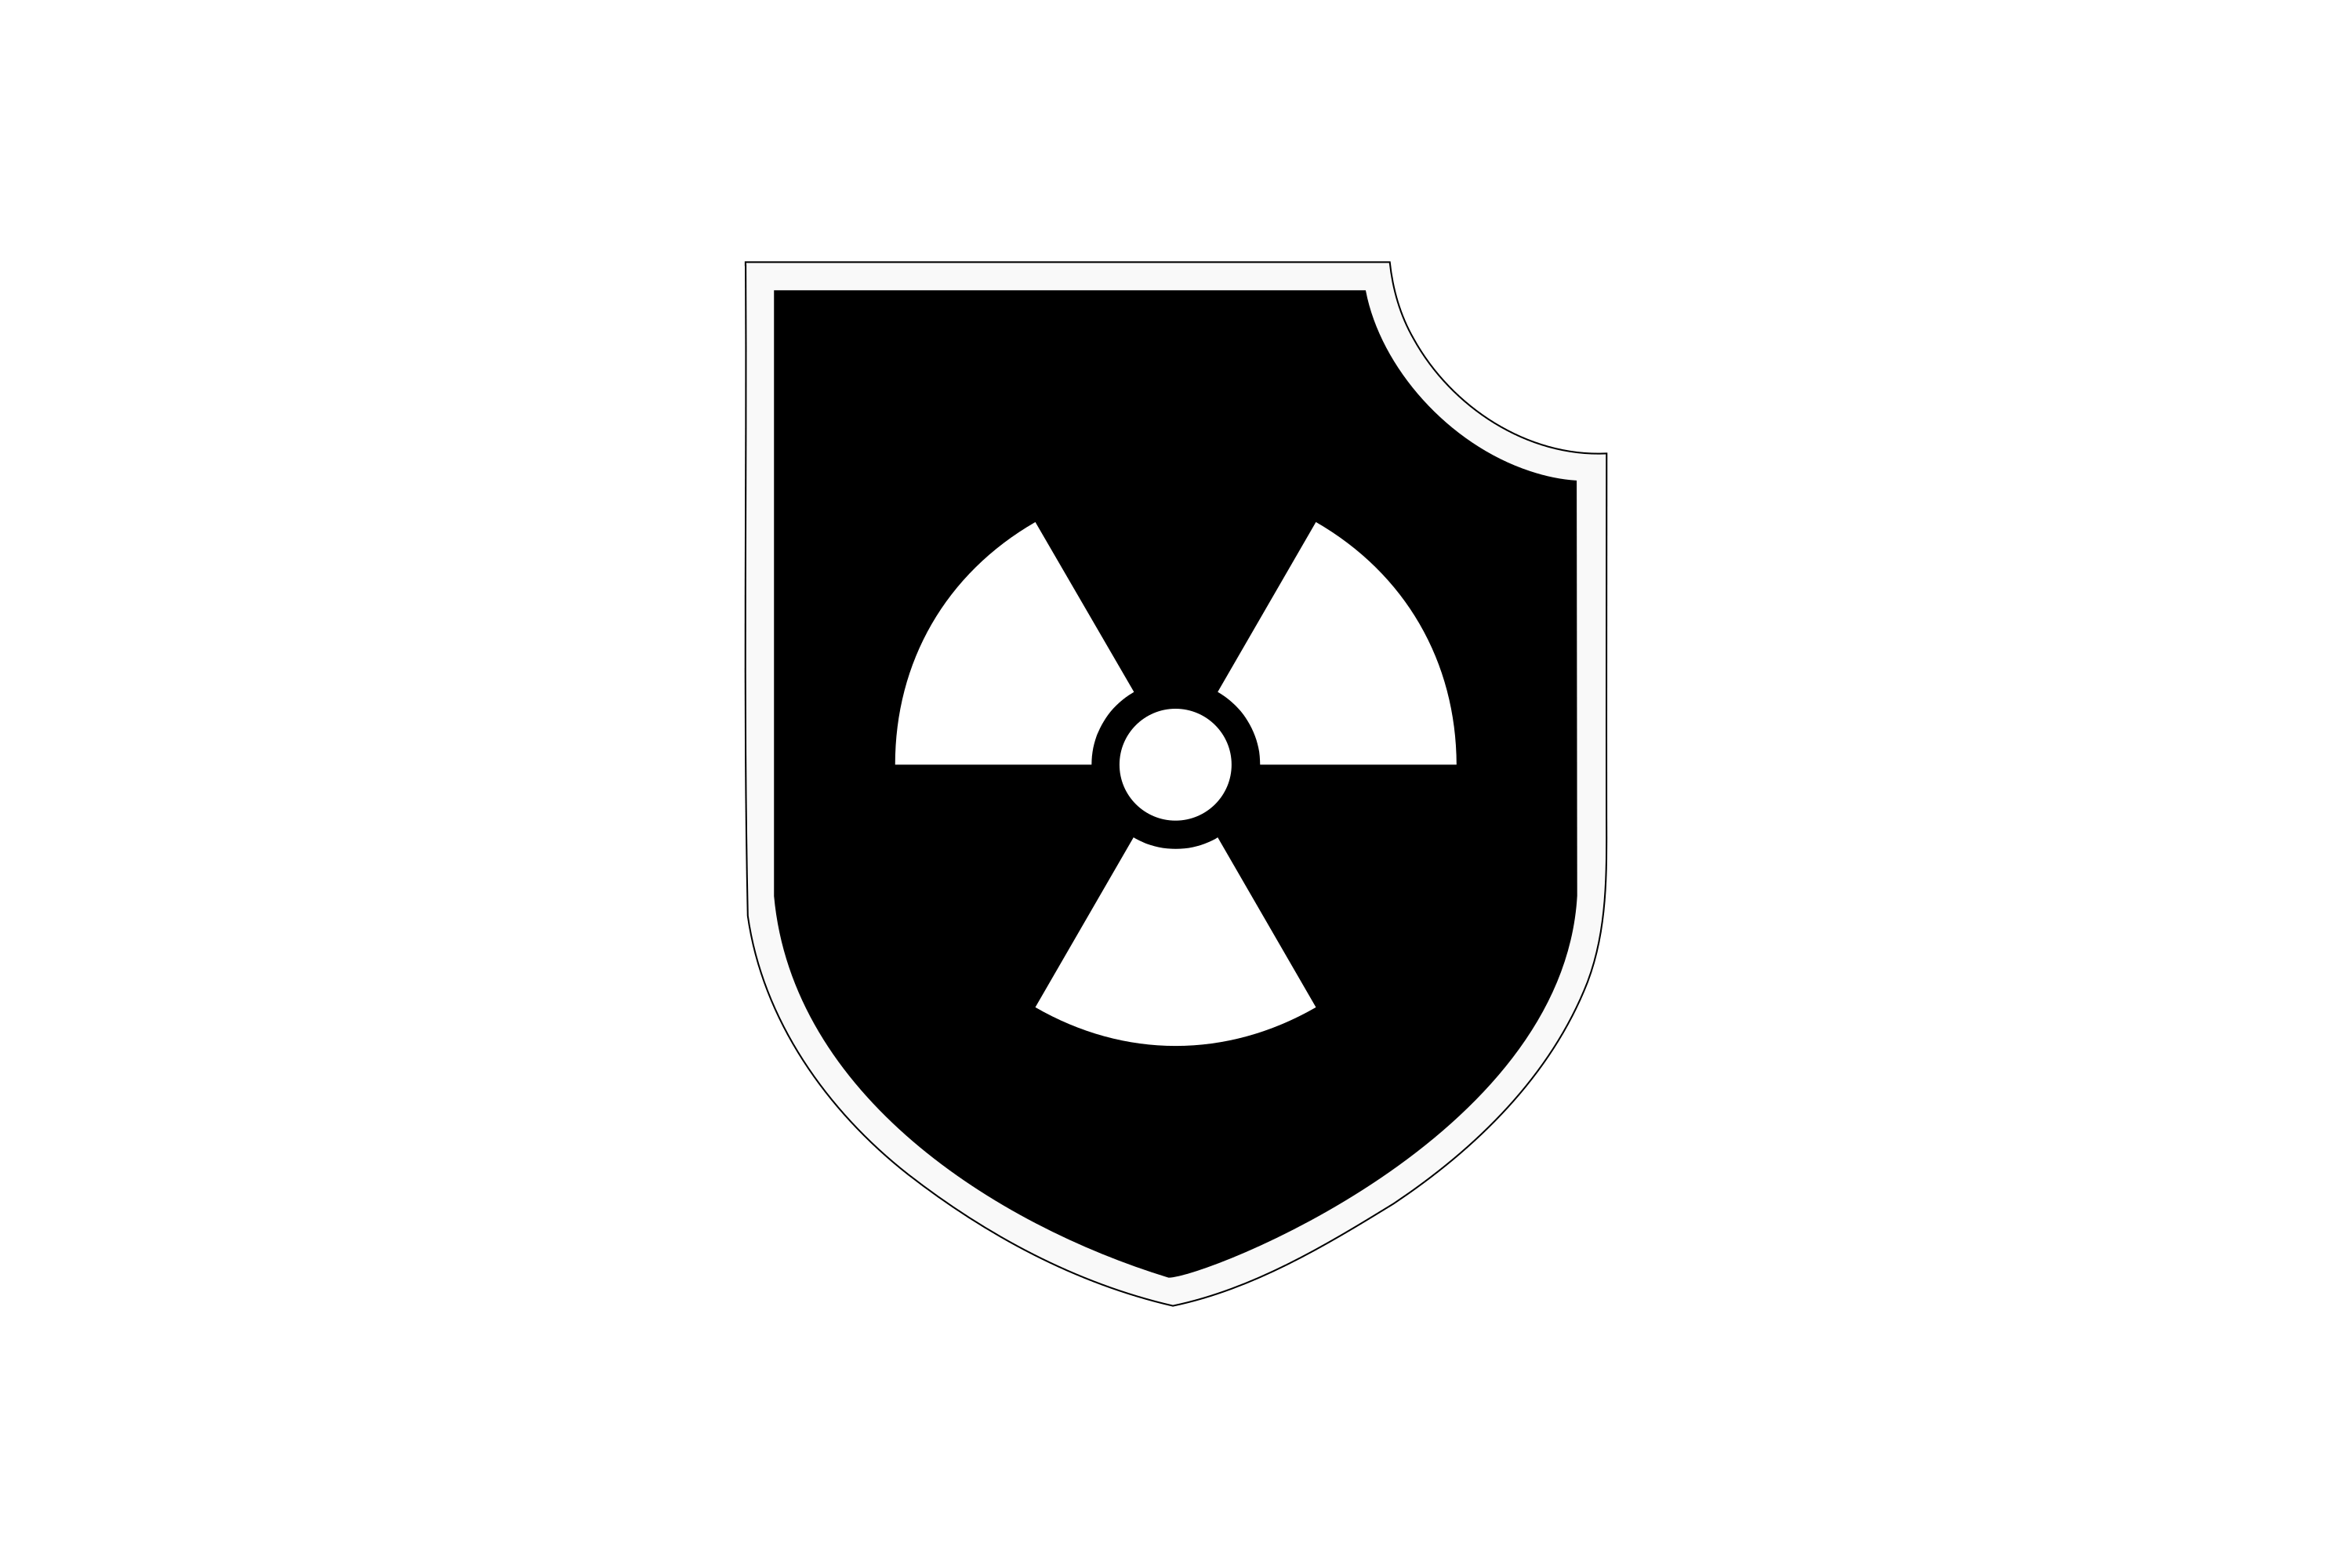 Download Atomwaffen Division Logo in SVG Vector or PNG File Format